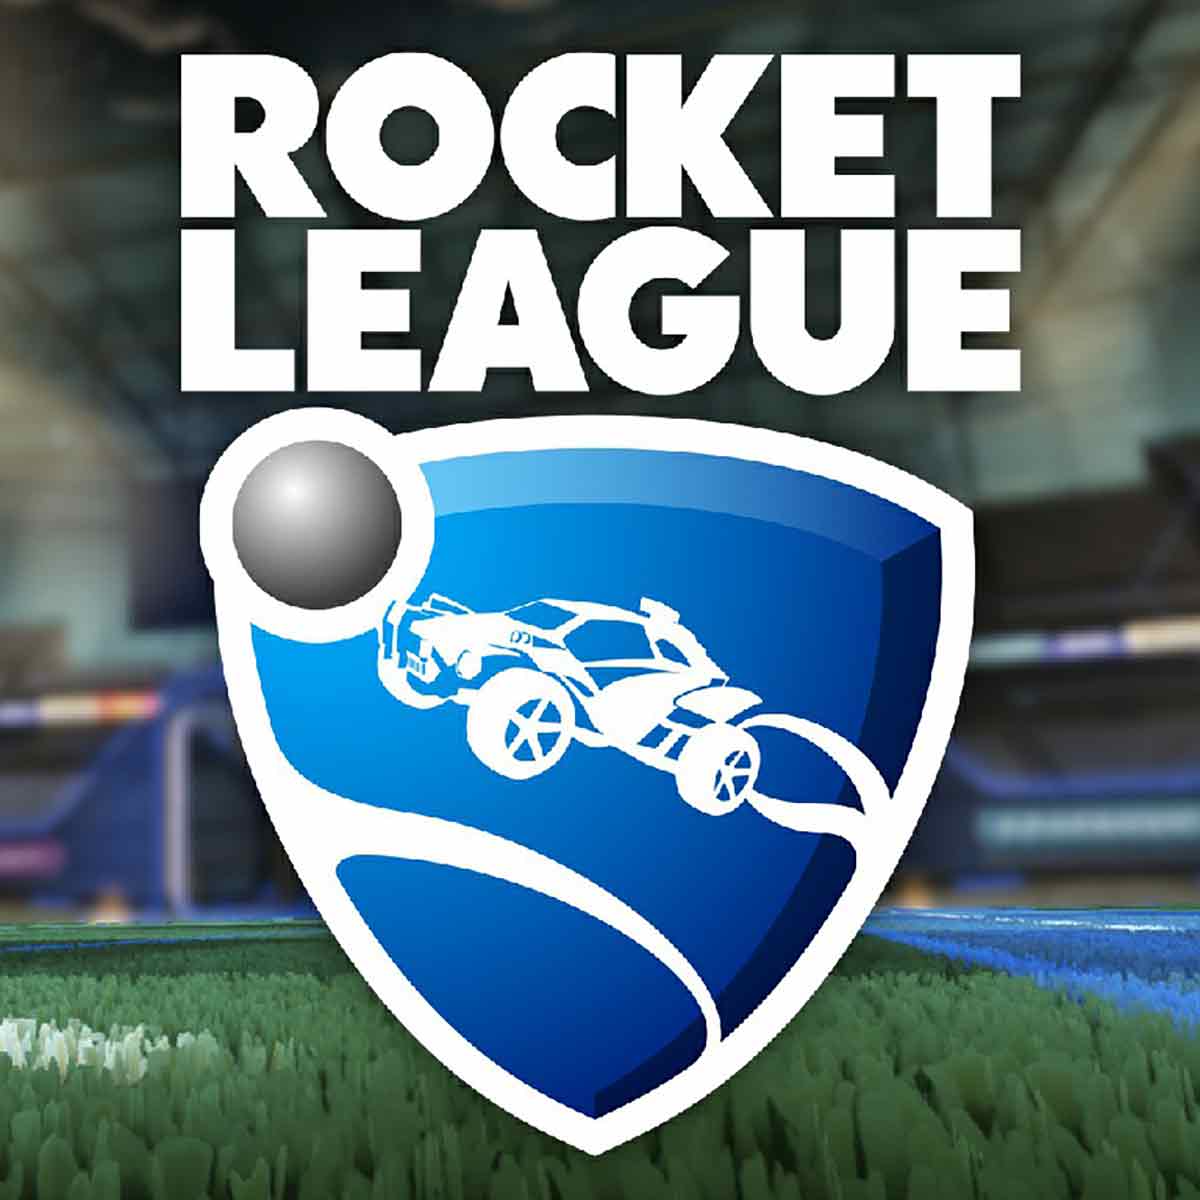 quit rocket league cover image